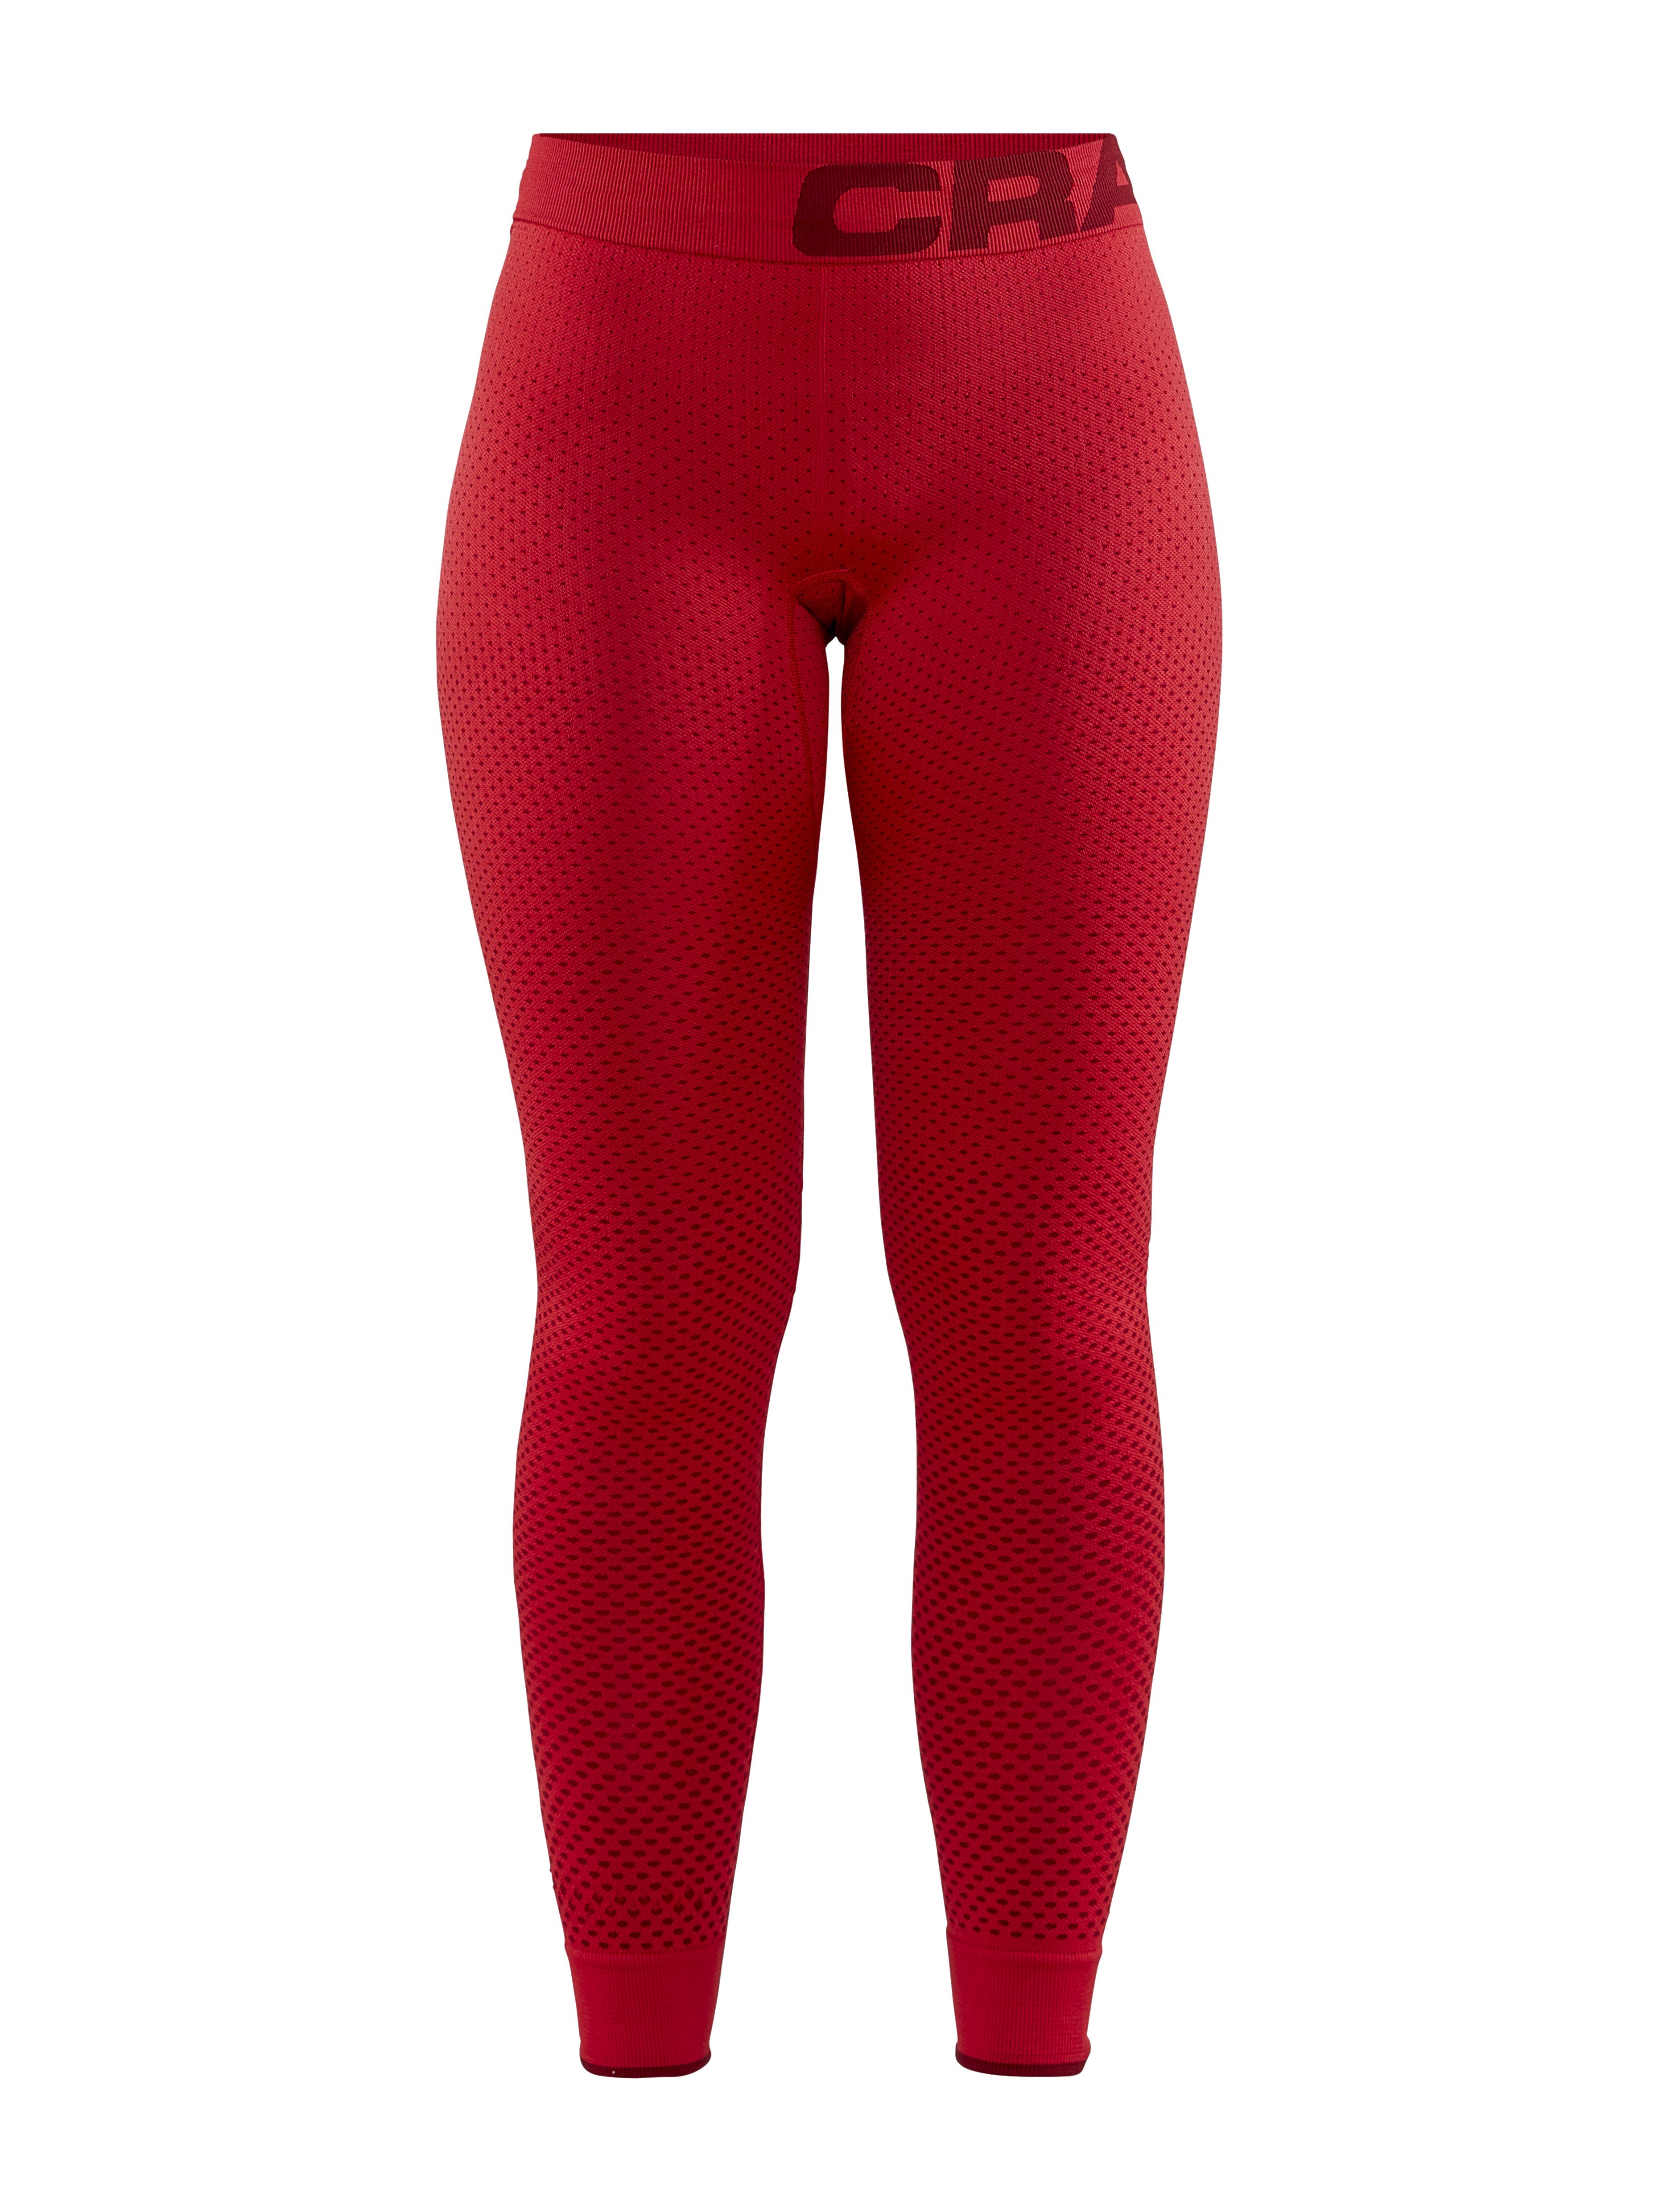 Legginsy termoaktywne damskie Craft Warm Intensity Pants - Czerwone